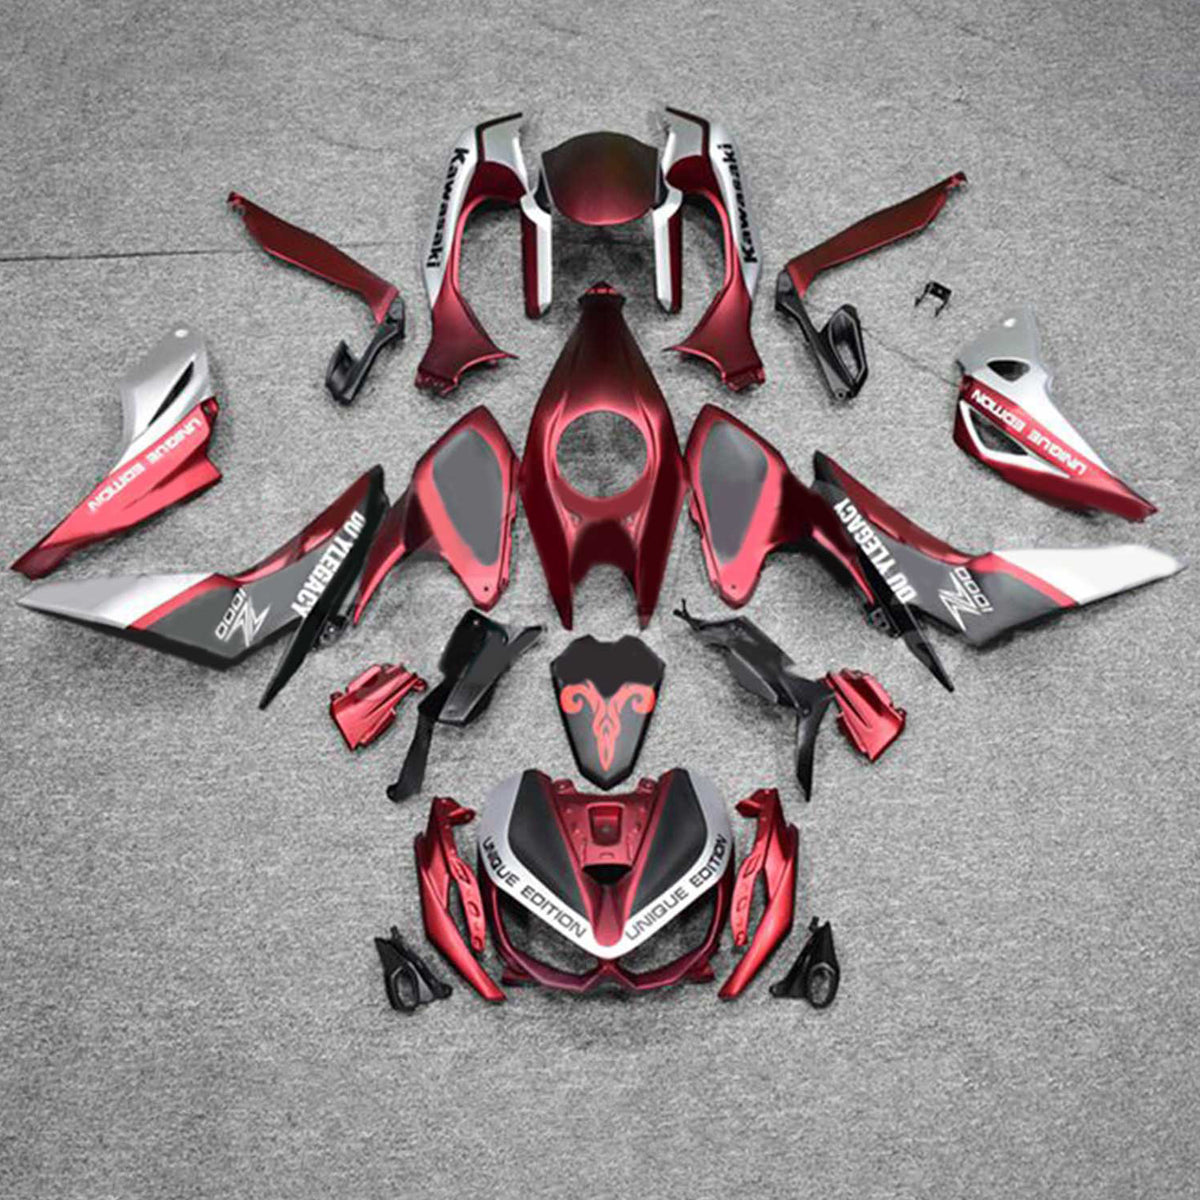 Kit carena Amotopart 2014-2017 Z1000 Kawasaki rosso e nero Style2